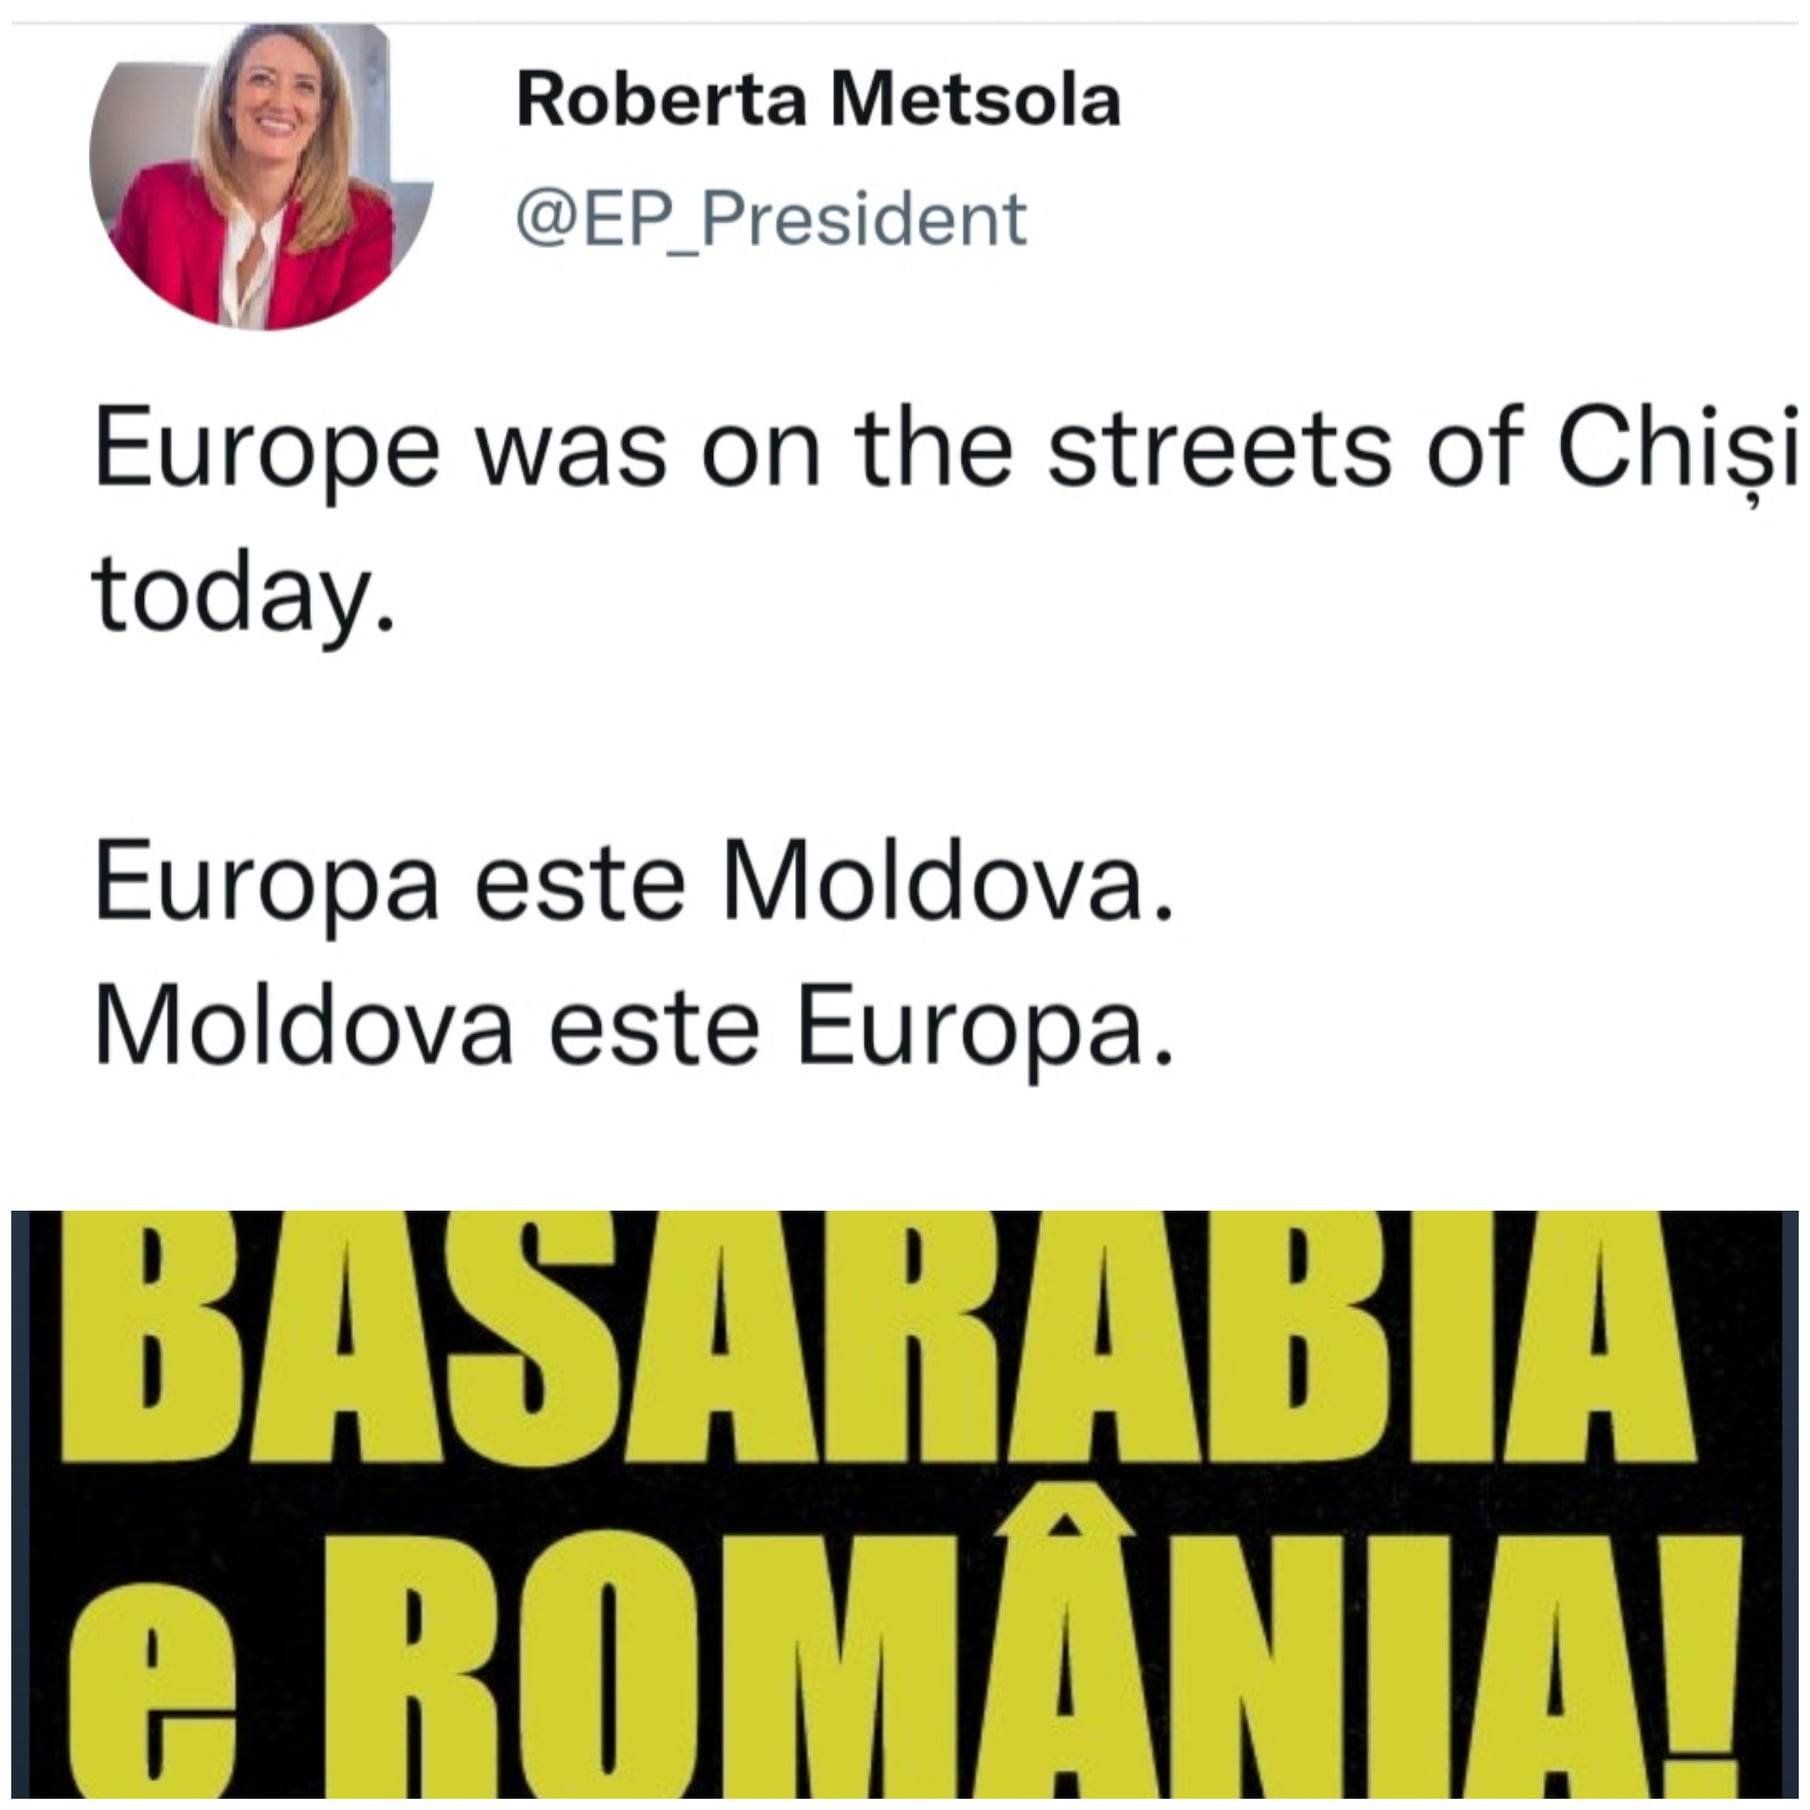 Europa este Moldova și Moldova este Europa. Nimic despre România. Cu ce diferă propaganda UE de cea a URSS? EDITORIAL